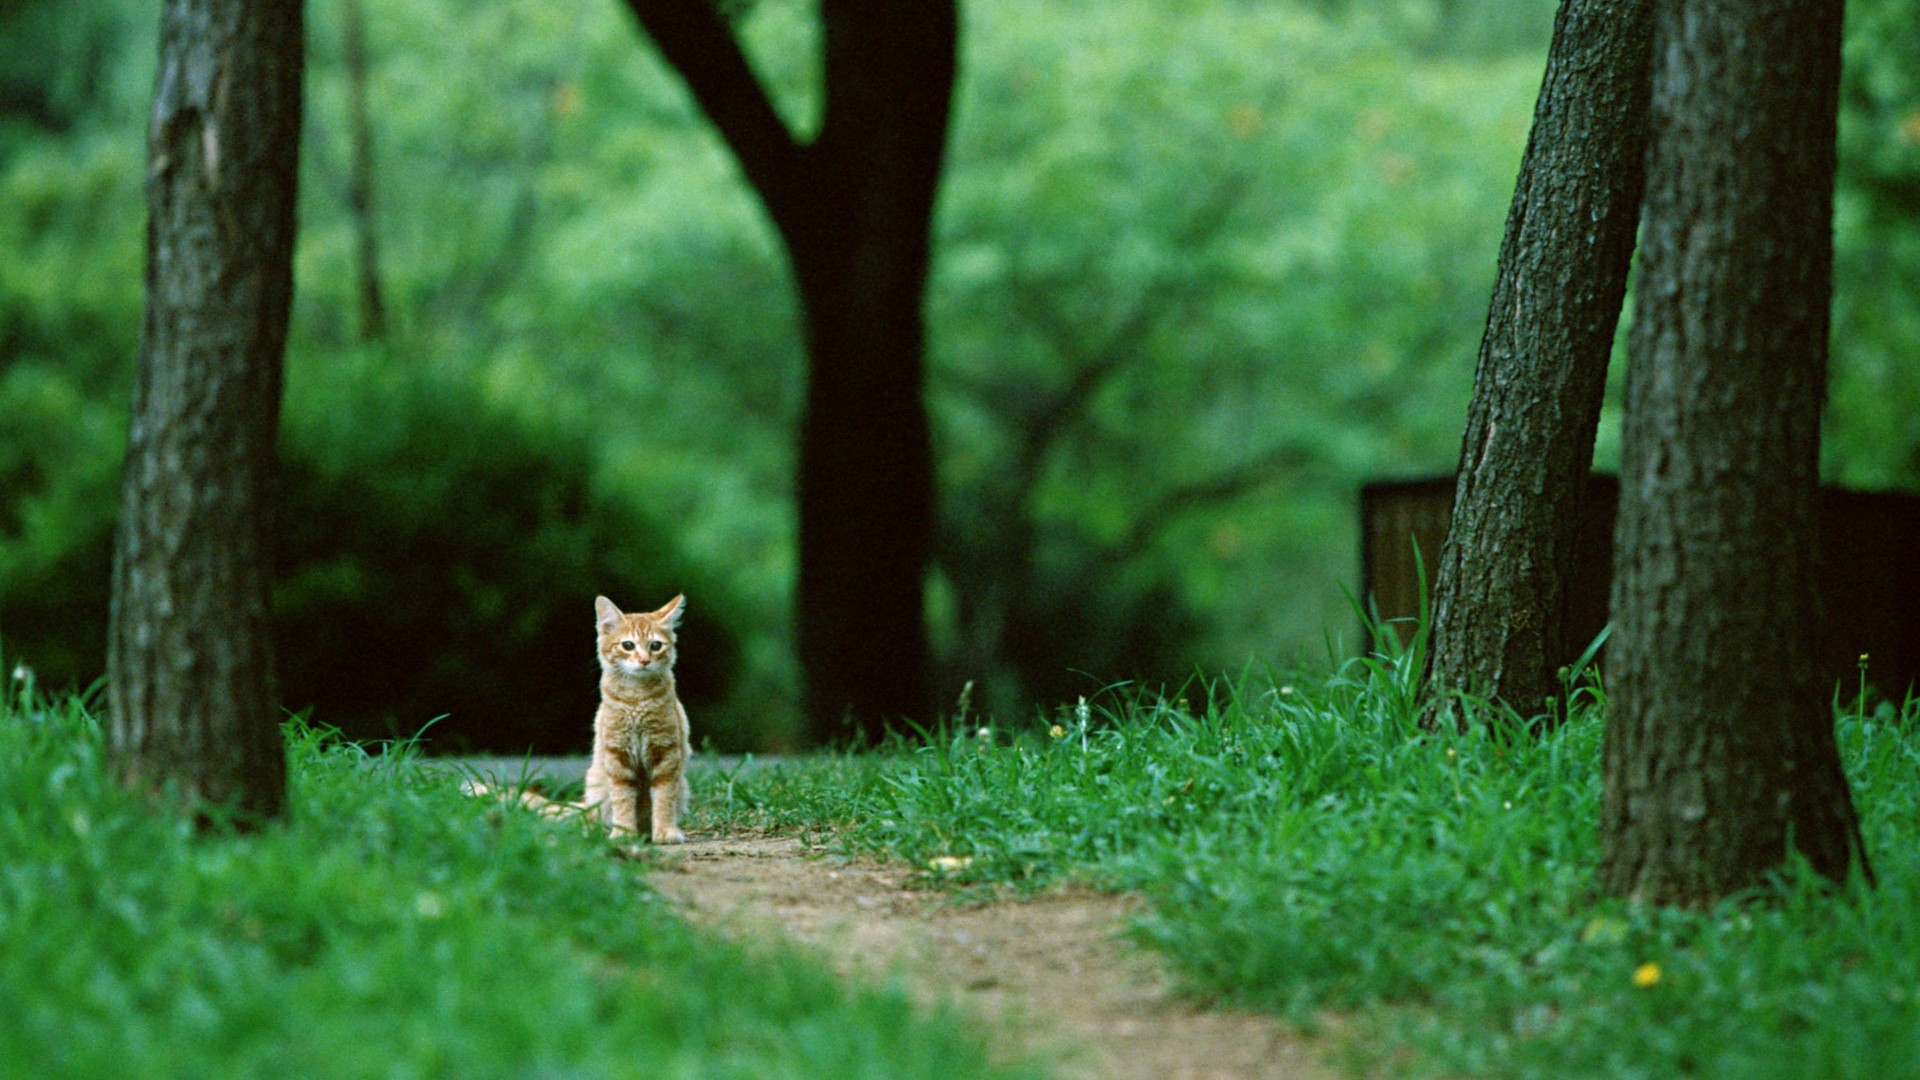 黄色小猫,坐在草地上,凝望,树林风景壁纸